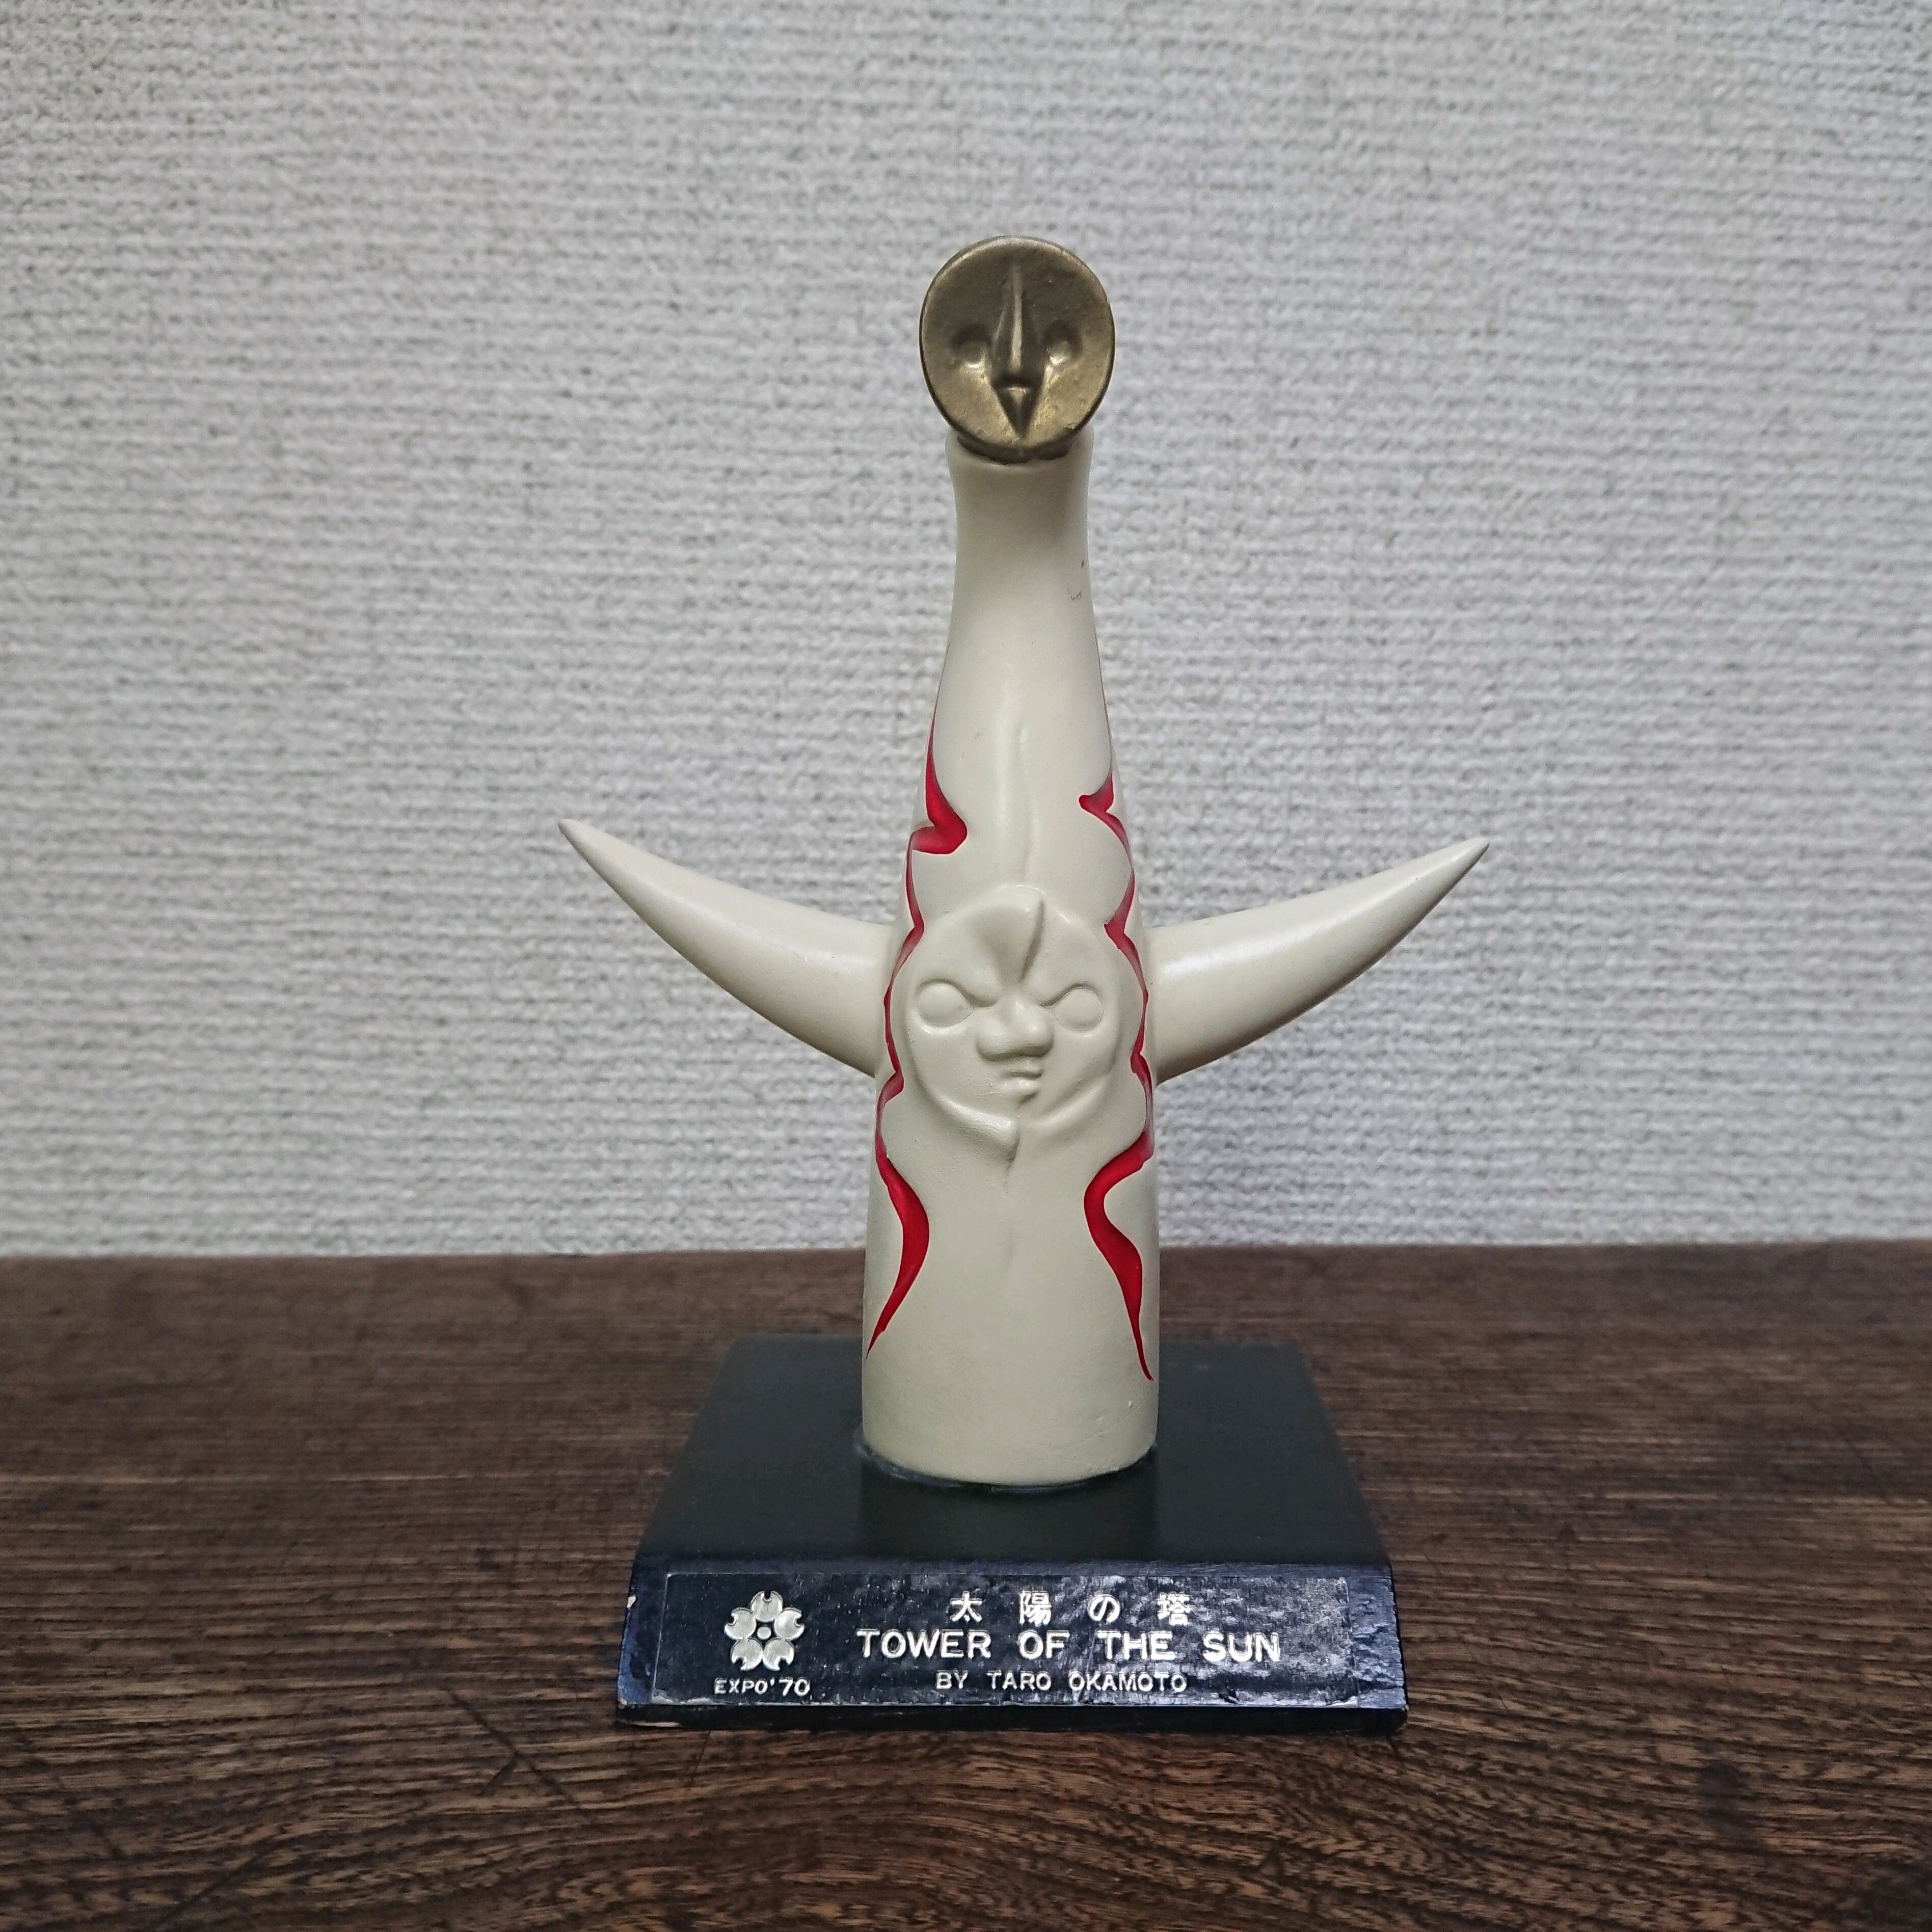 大阪万博 EXPO70 岡本太郎作 銅製 太陽の塔 置物 N 5932 - 金属工芸